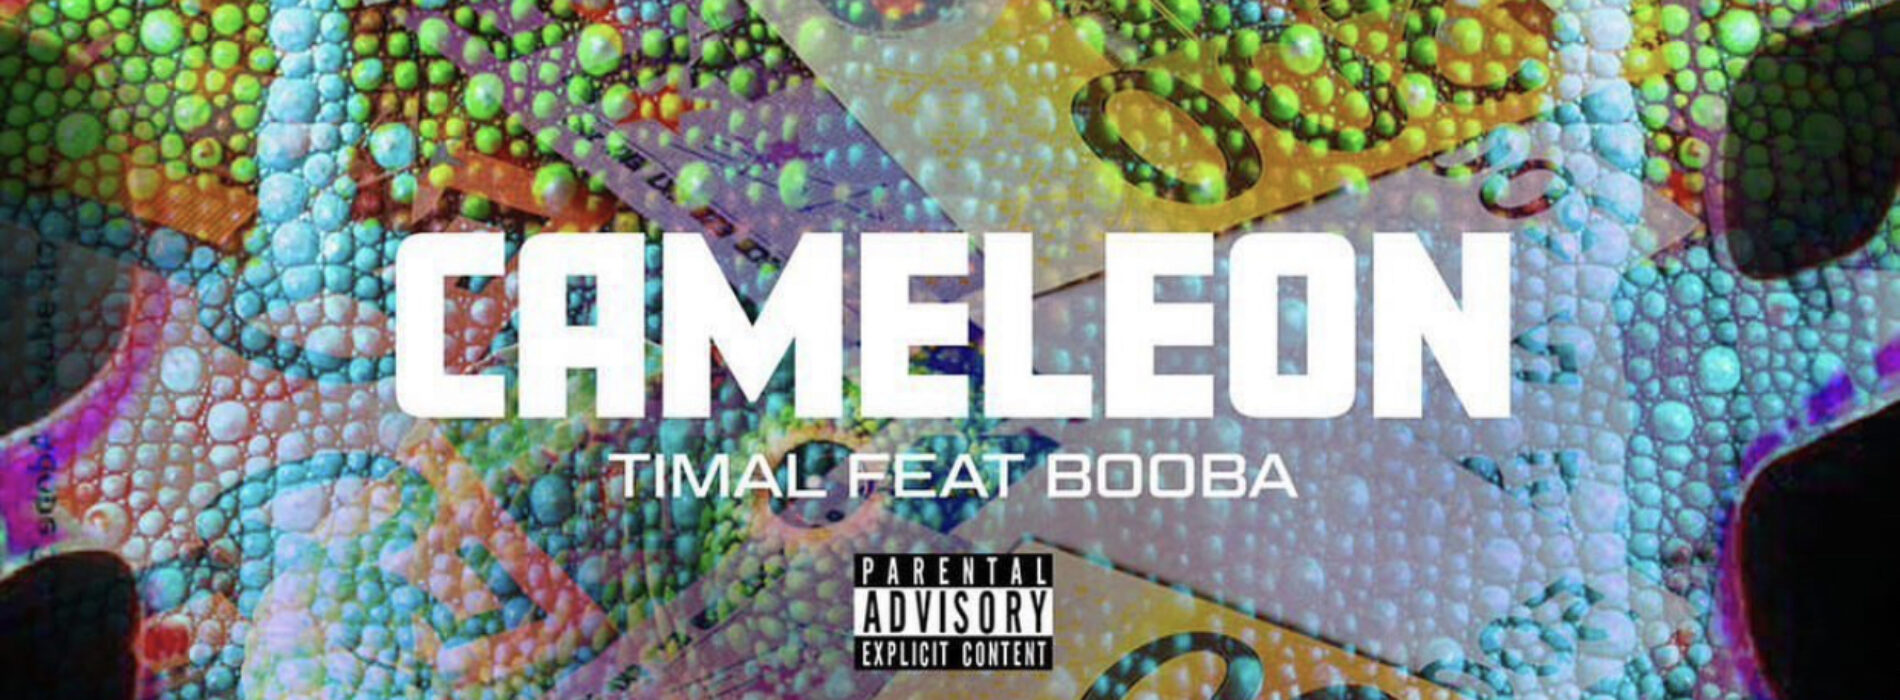 Timal feat booba – Caméléon (clip officiel) – Septembre 2022